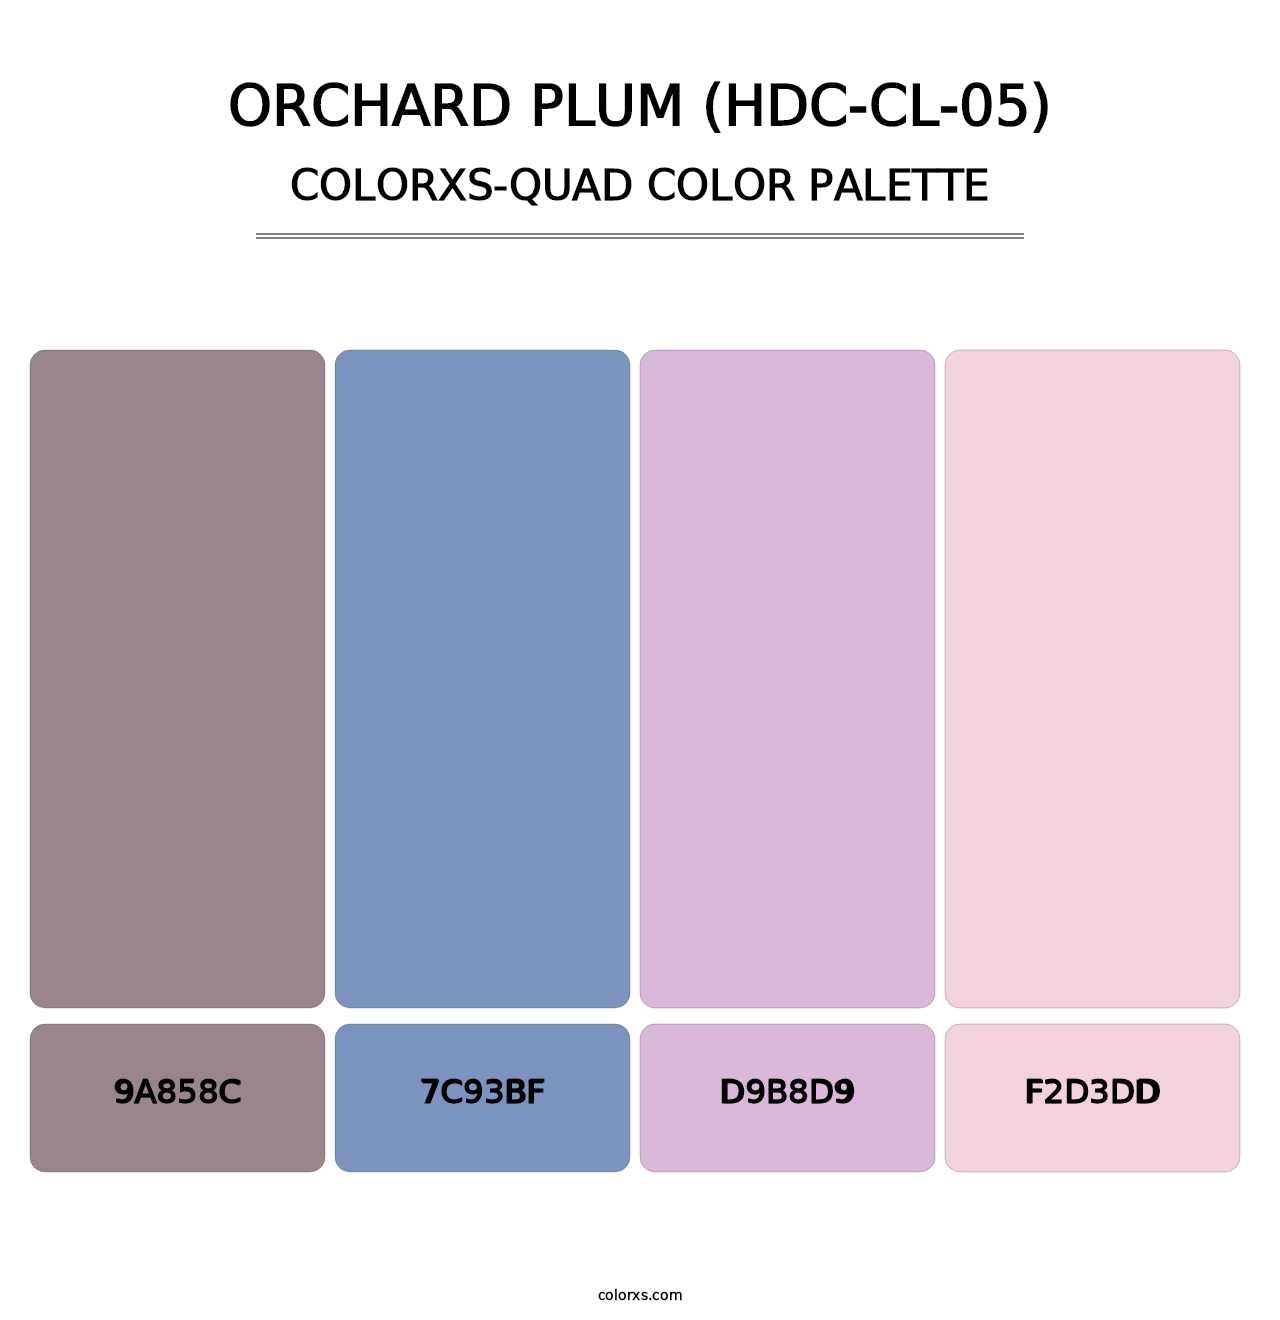 Orchard Plum (HDC-CL-05) - Colorxs Quad Palette